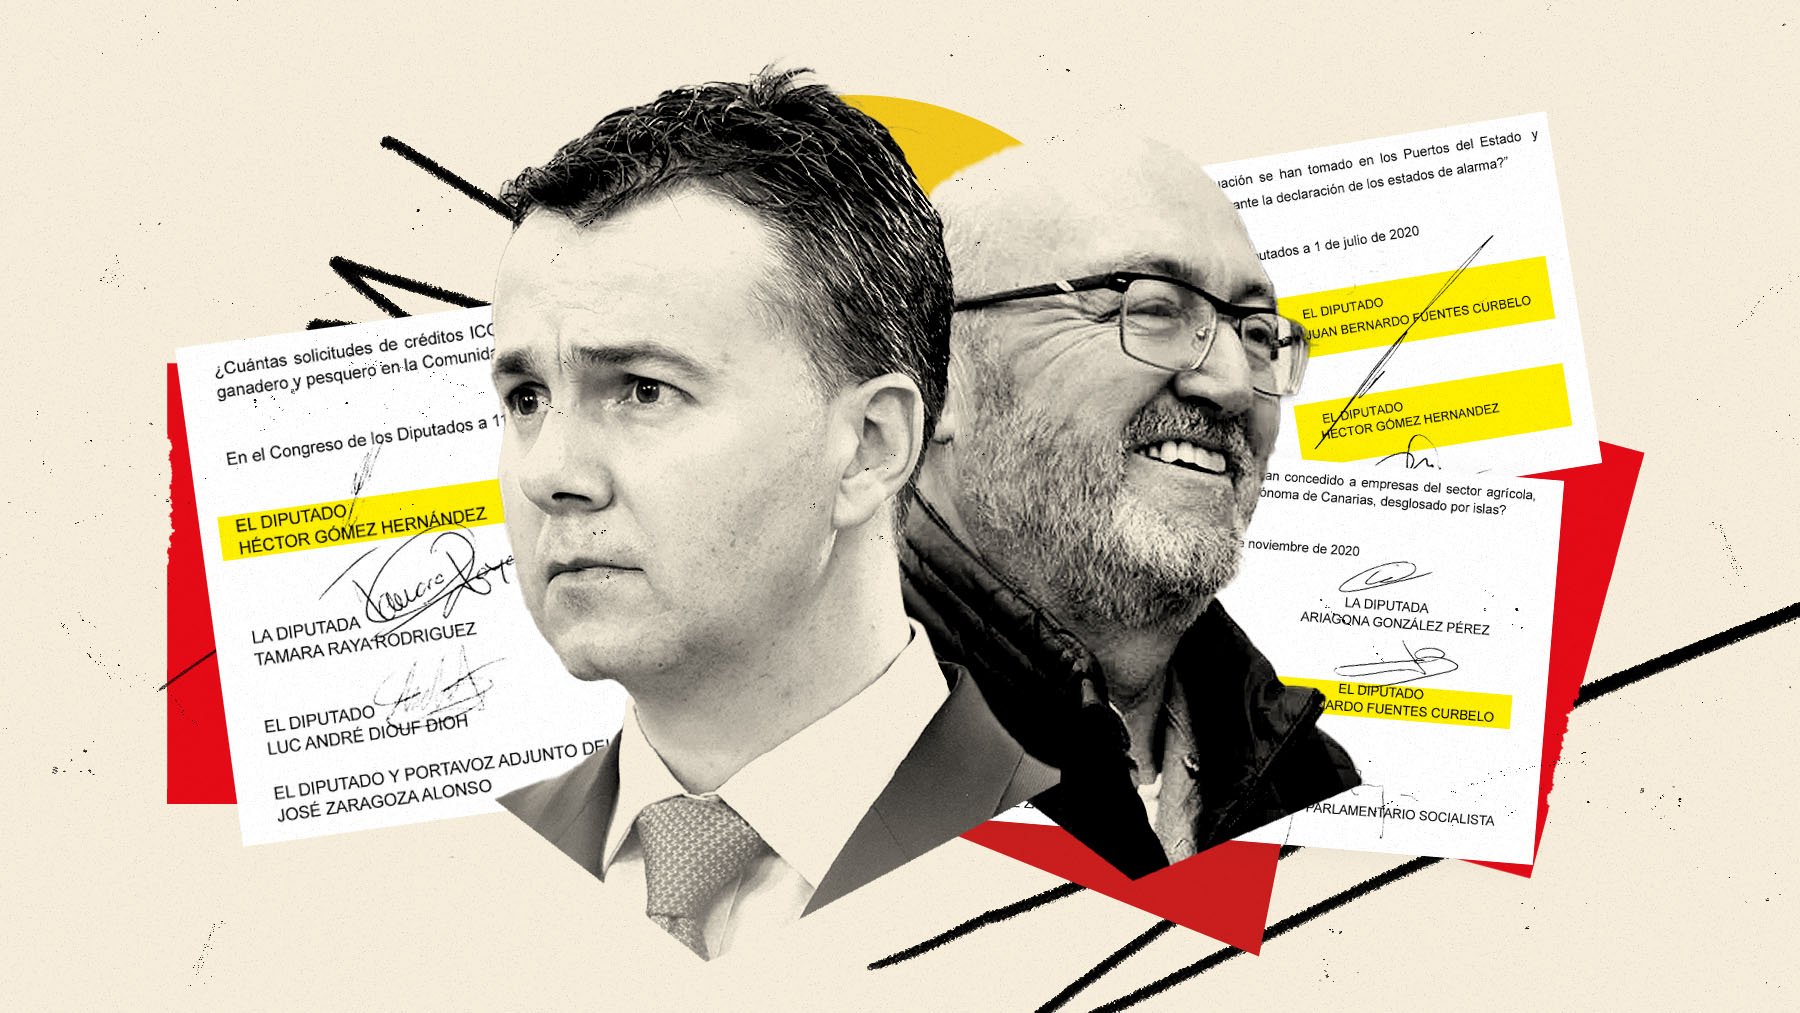 ‘Tito Berni’ y Héctor Gómez firmaron más de 100 preguntas por escrito al Gobierno.